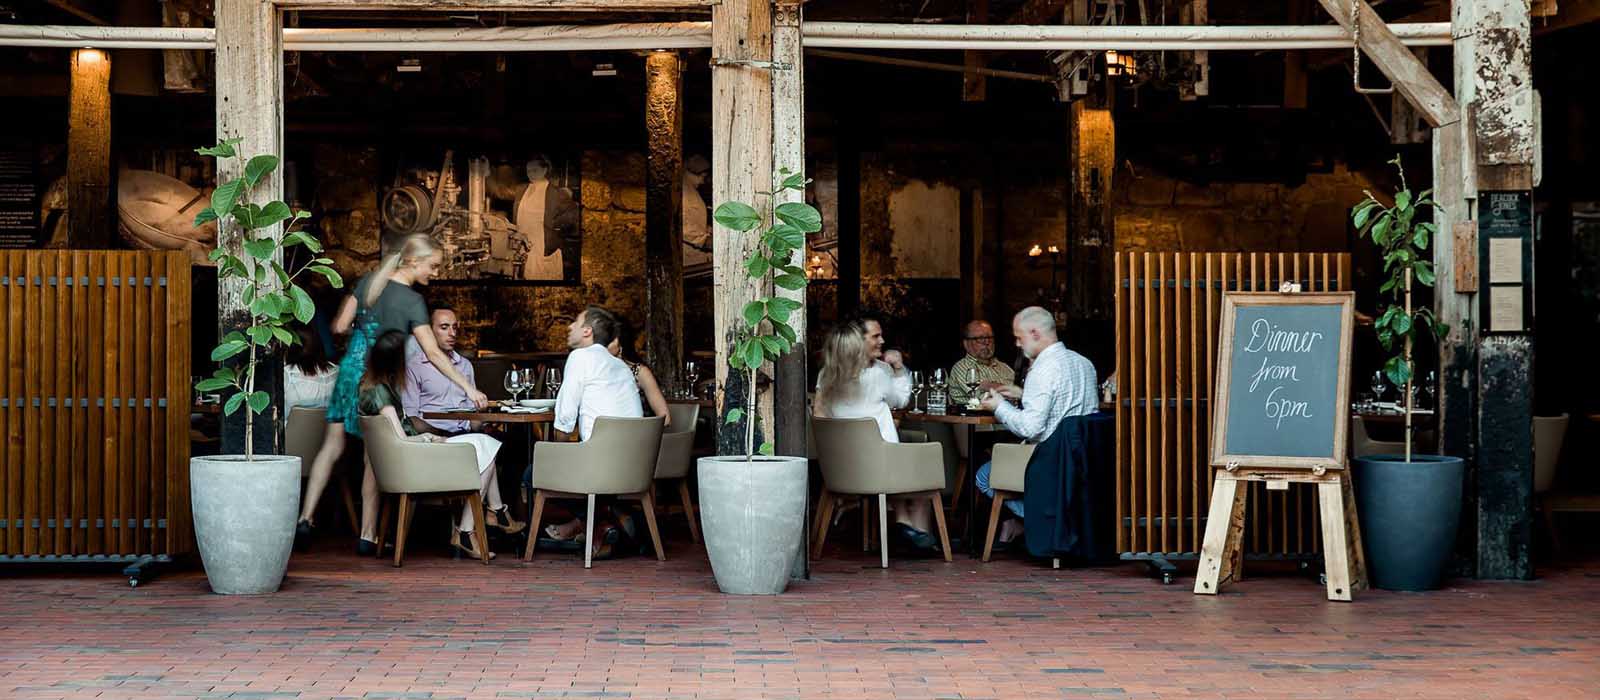 13 Best Restaurants In Hobart